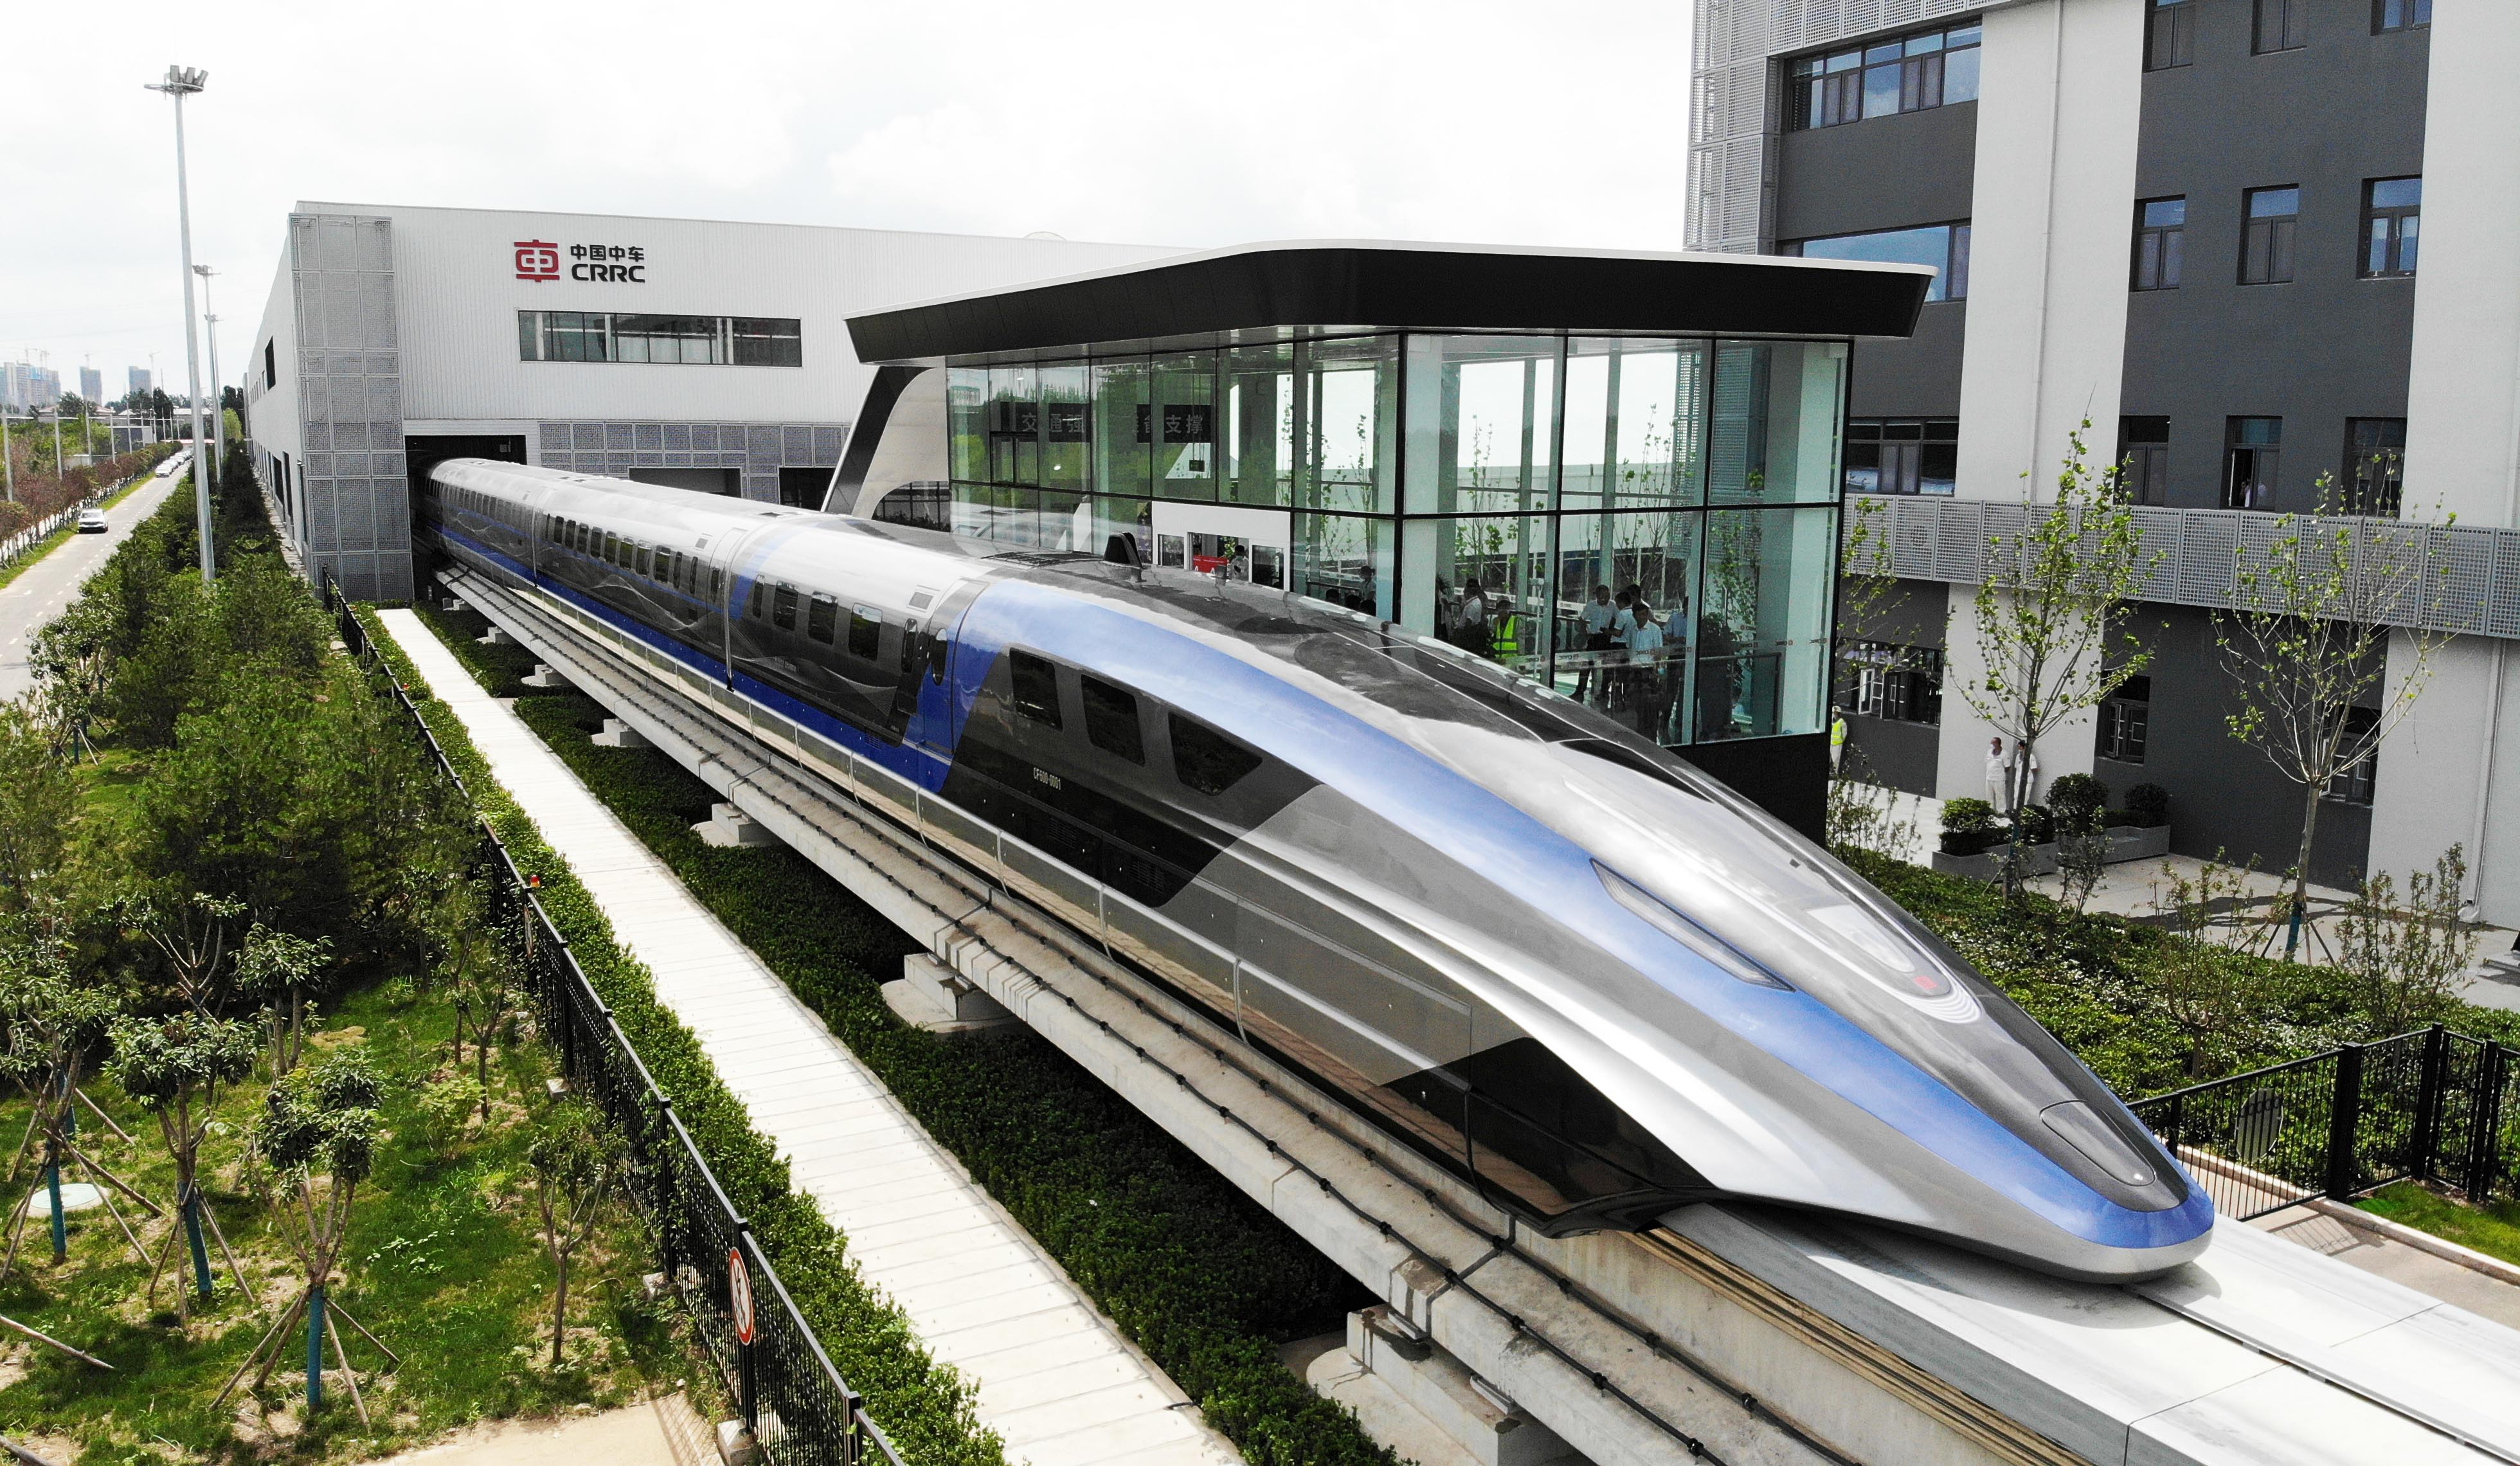 青岛制造的时速600公里高速磁浮试验样车。高速列车制造正成为青岛新的金花品牌。徐速绘